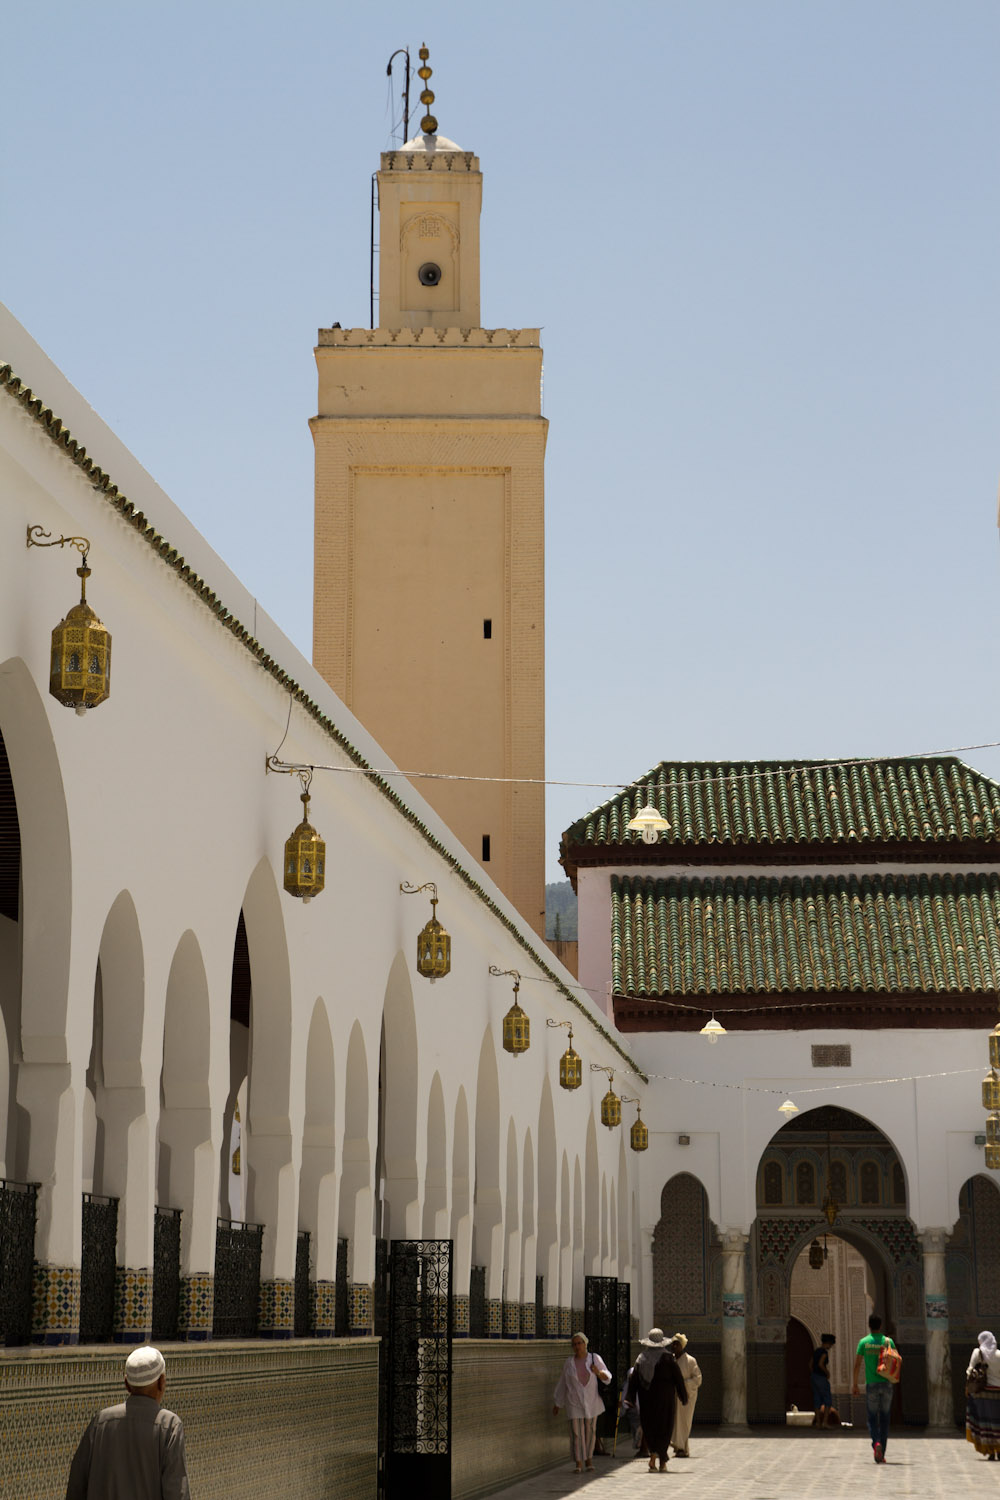 Entrada al Mausoleo de Idriss I - Moylay Idriss, Marruecos